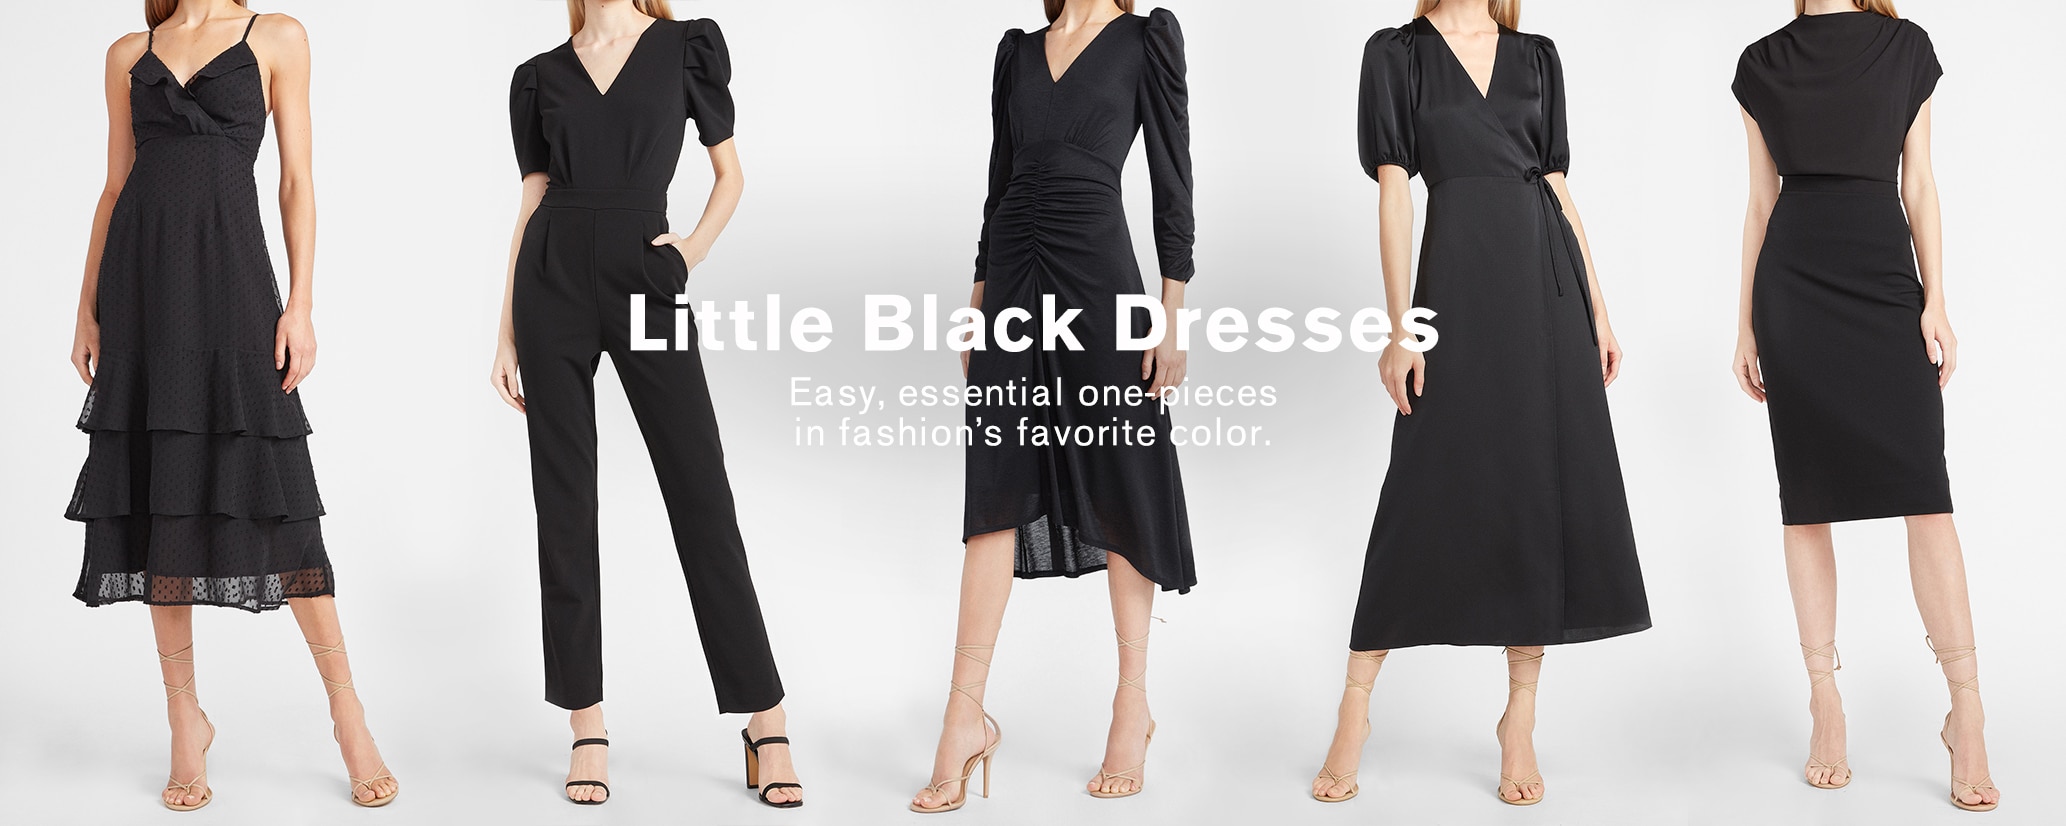 black formal wear for ladies